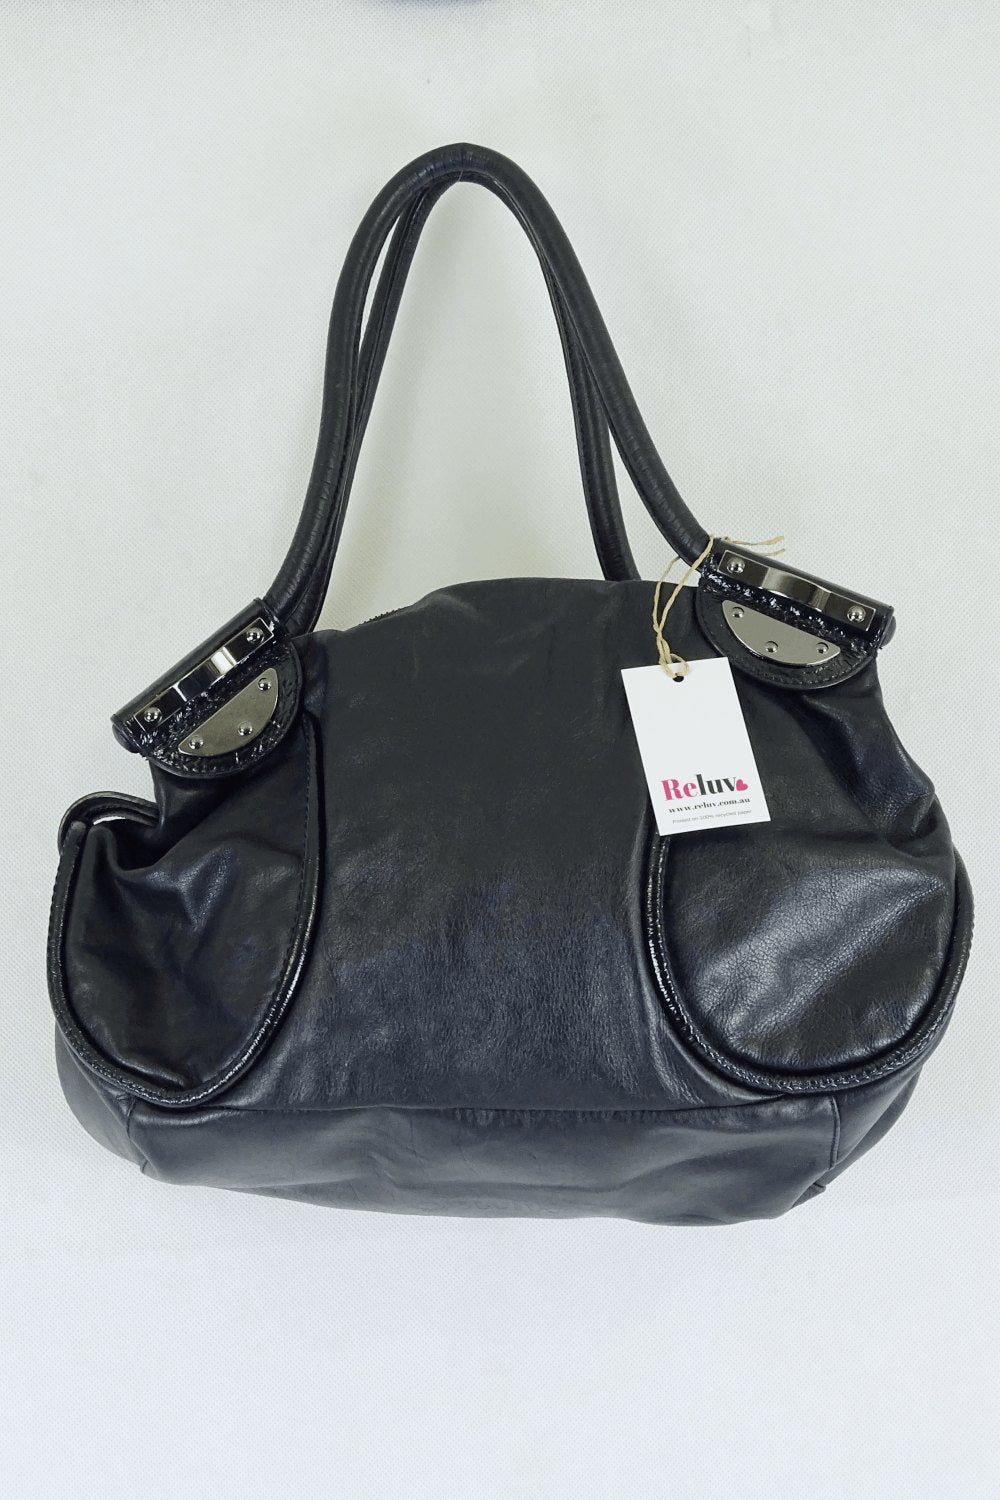 Mimco Black Shoulder Bag